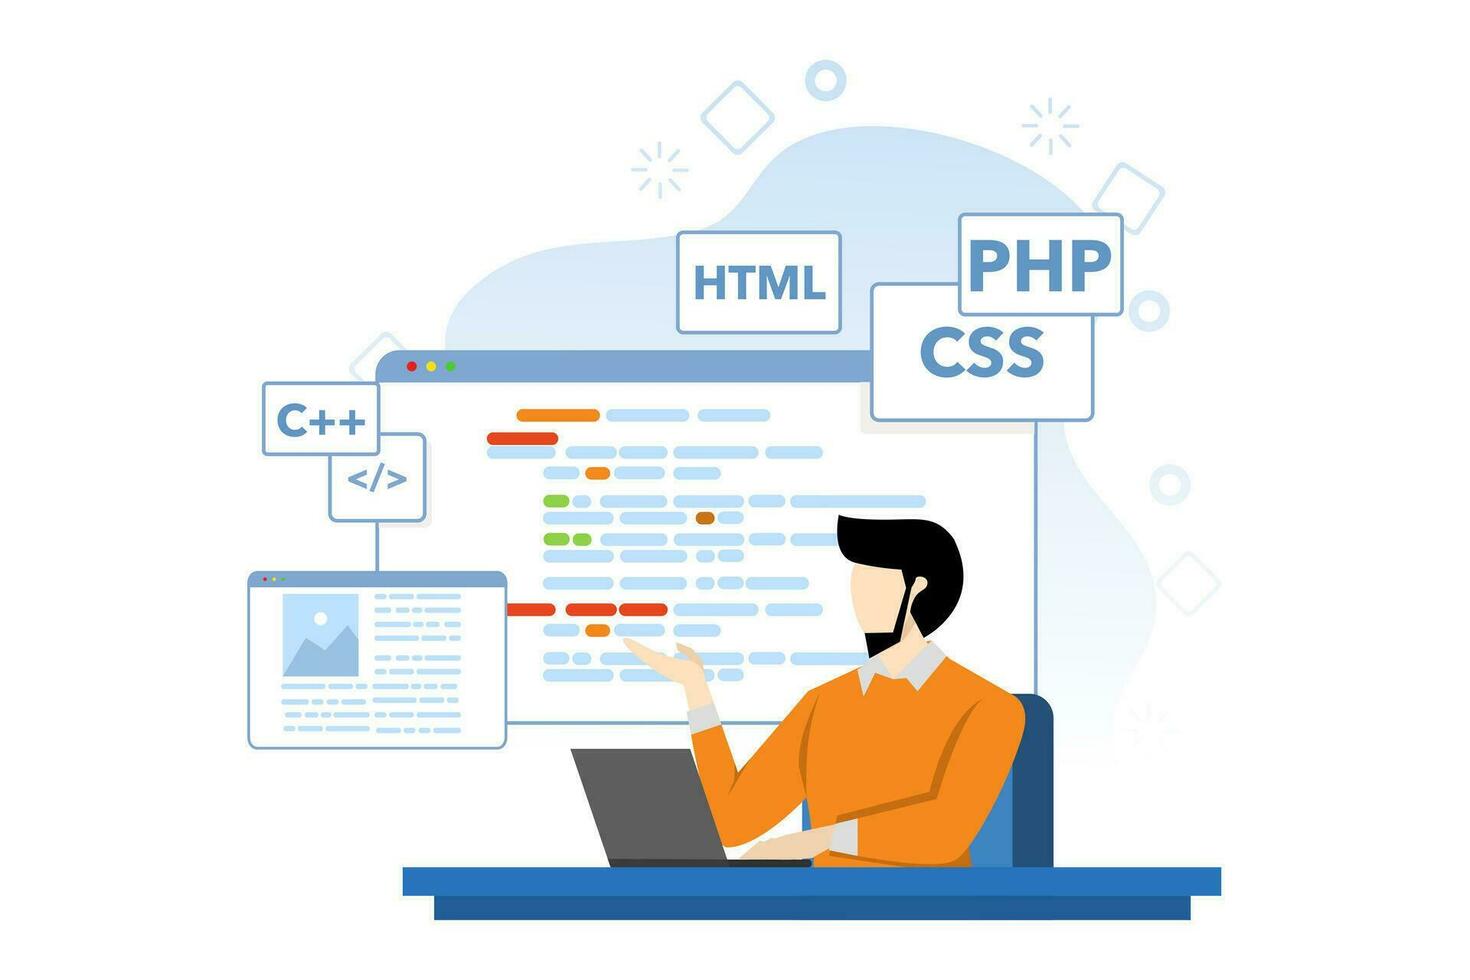 webb utveckling begrepp, tecken är design och utvecklande webbplatser och appar, mottaglig webb design, hemsida gränssnitt, kodning och programmering, platt vektor illustration på bakgrund.